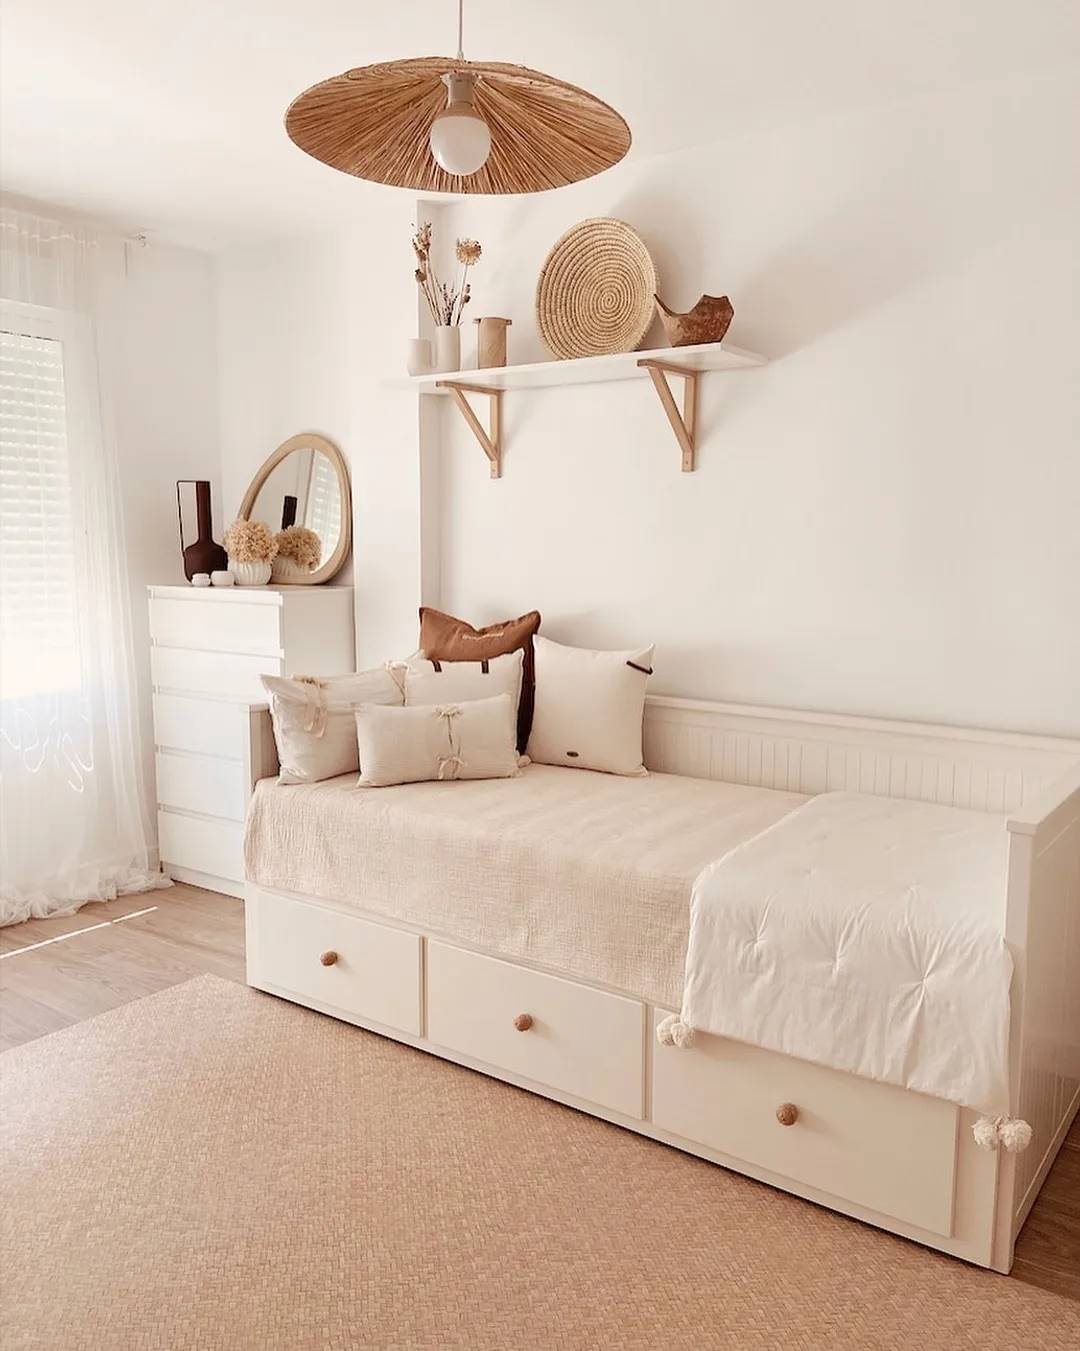 Habitación con cama diván HEMNES, cómoda KULLEN y estante de pared BURHULT / SANDSHULT de IKEA.